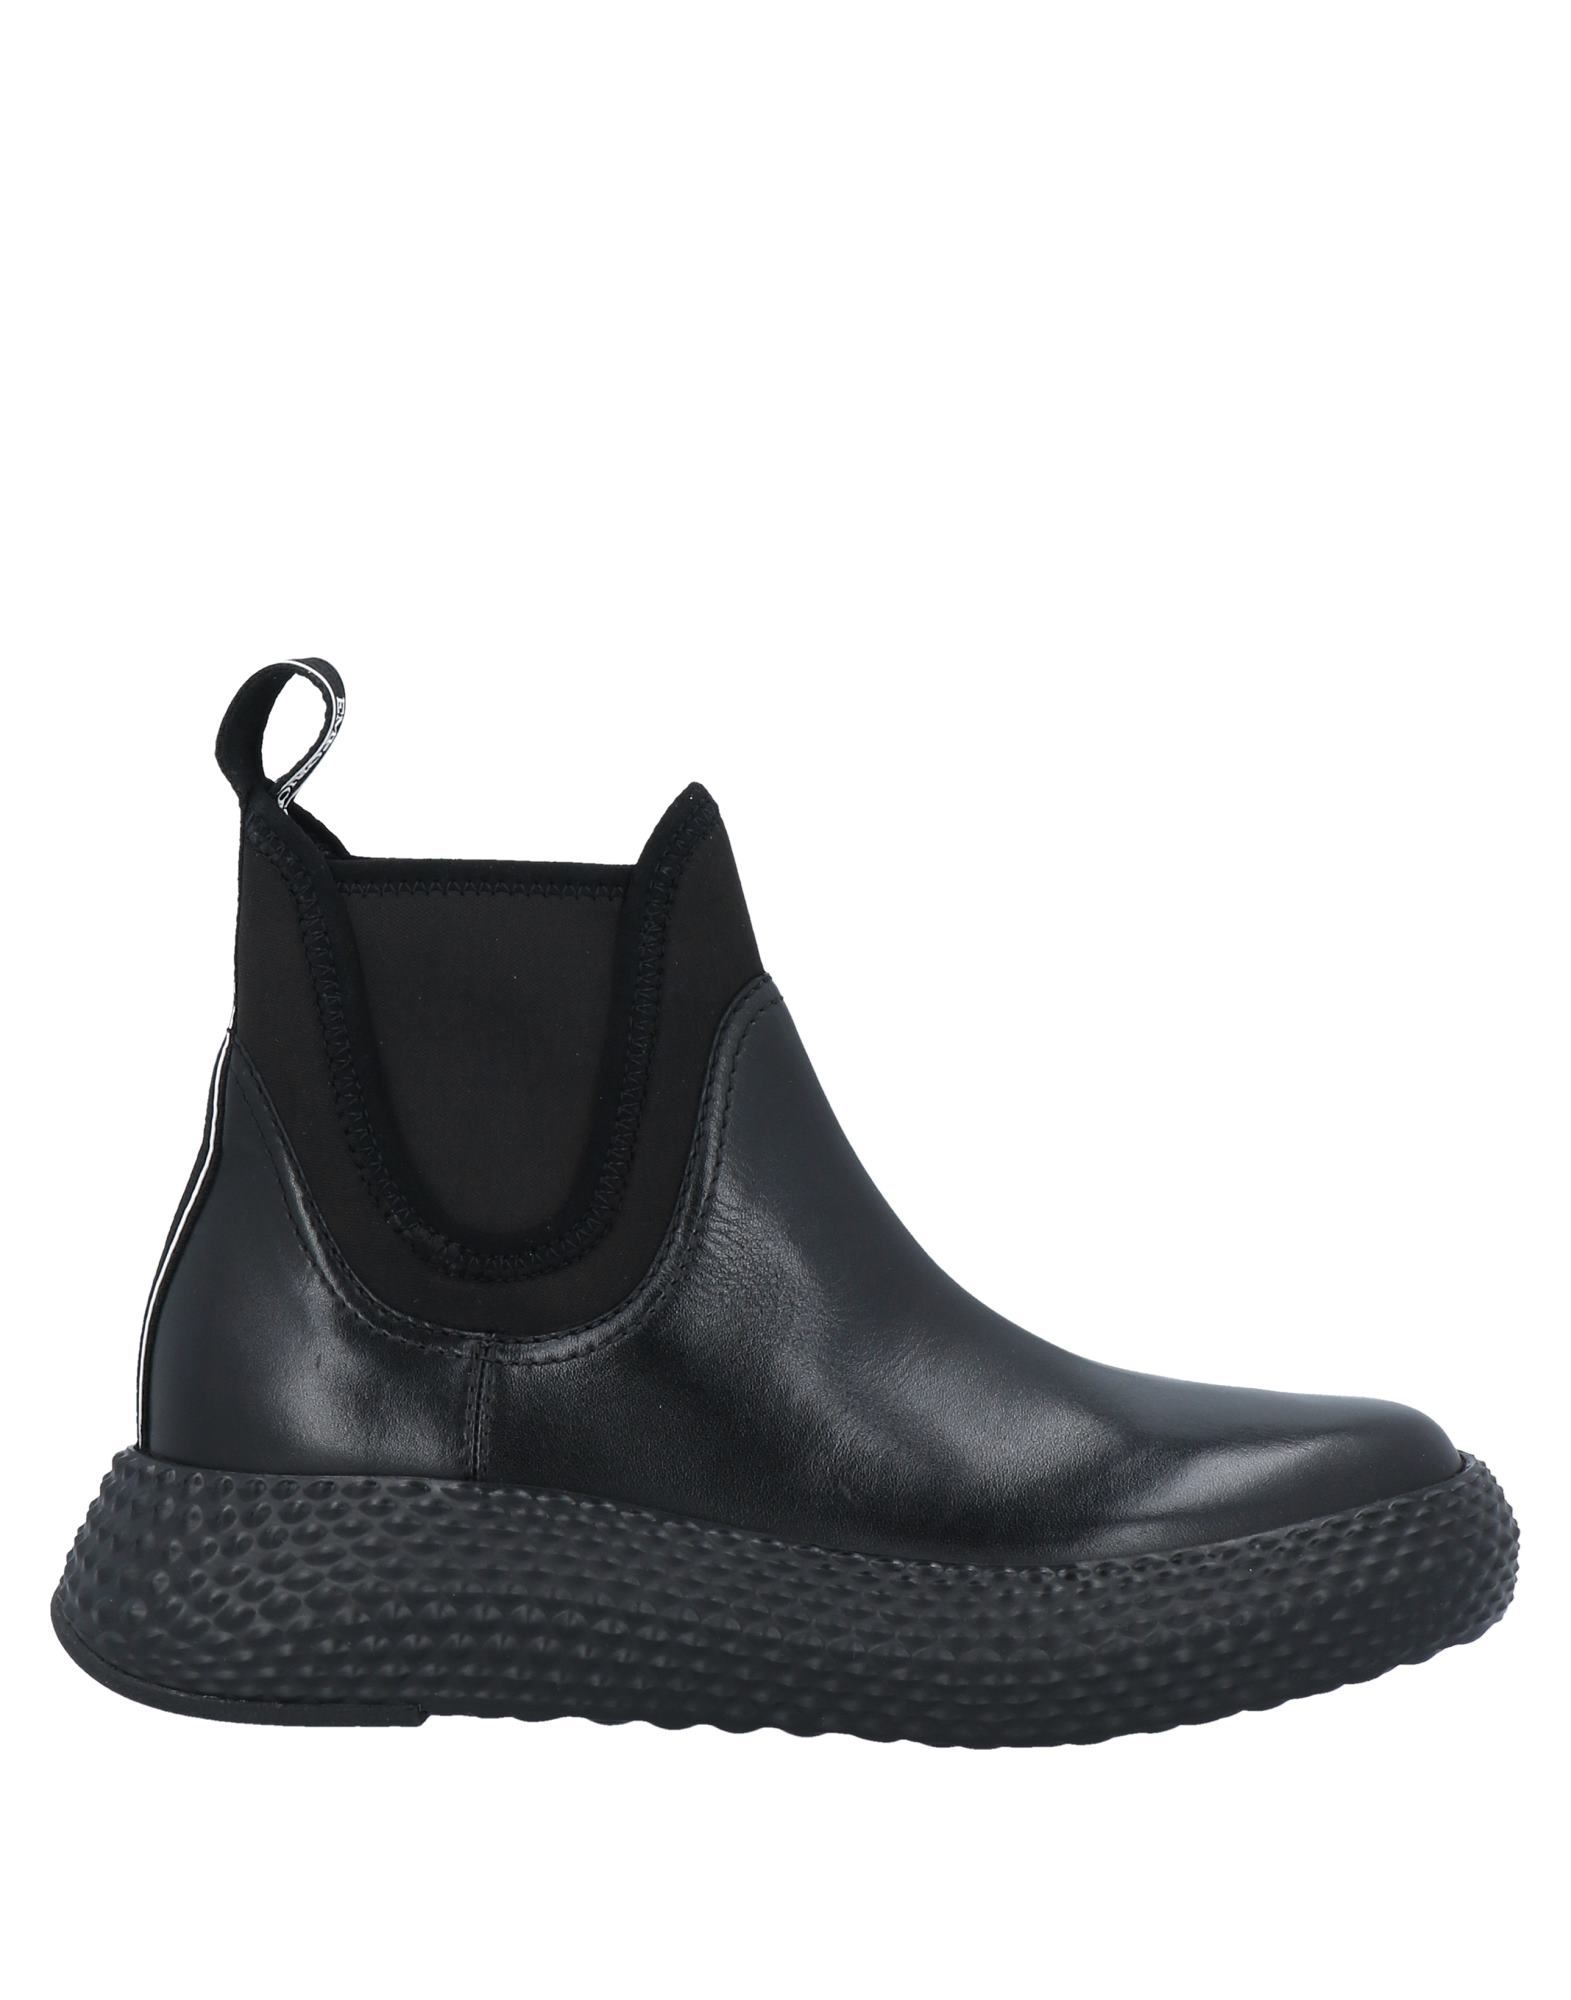 Shop Emporio Armani Woman Ankle Boots Black Size 5.5 Soft Leather, Textile Fibers